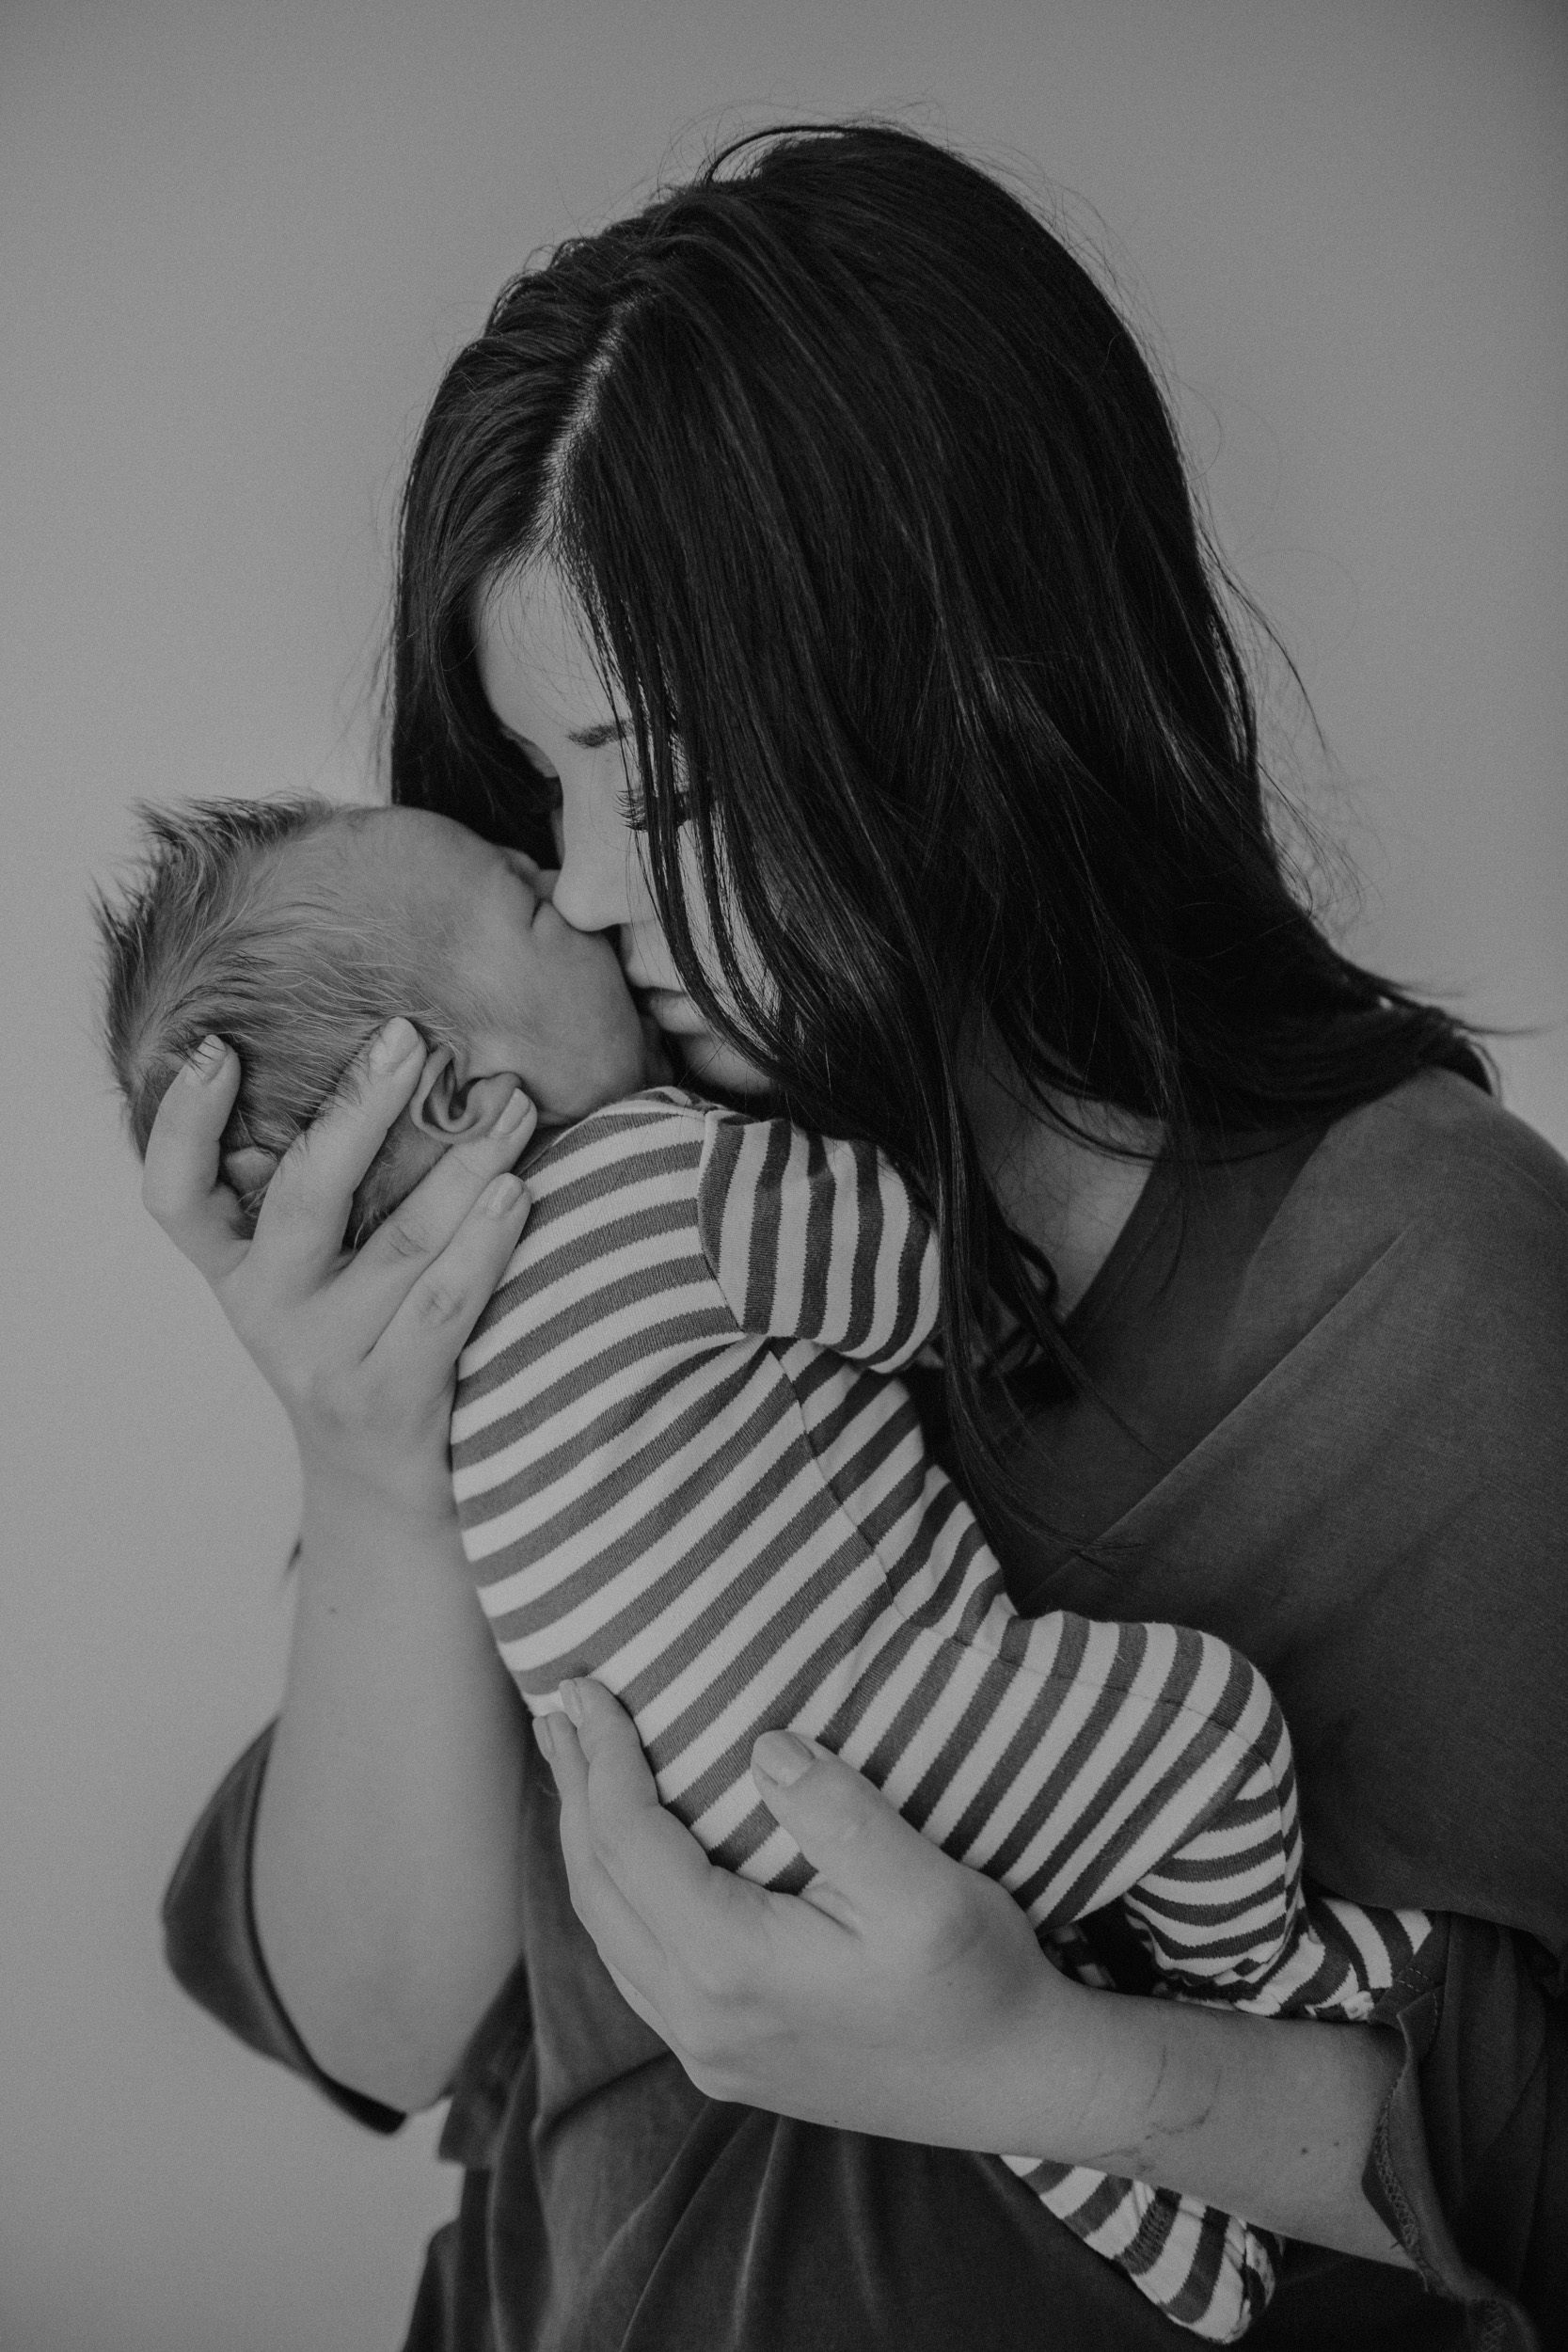 newborn boy in striped onesie being held by mom